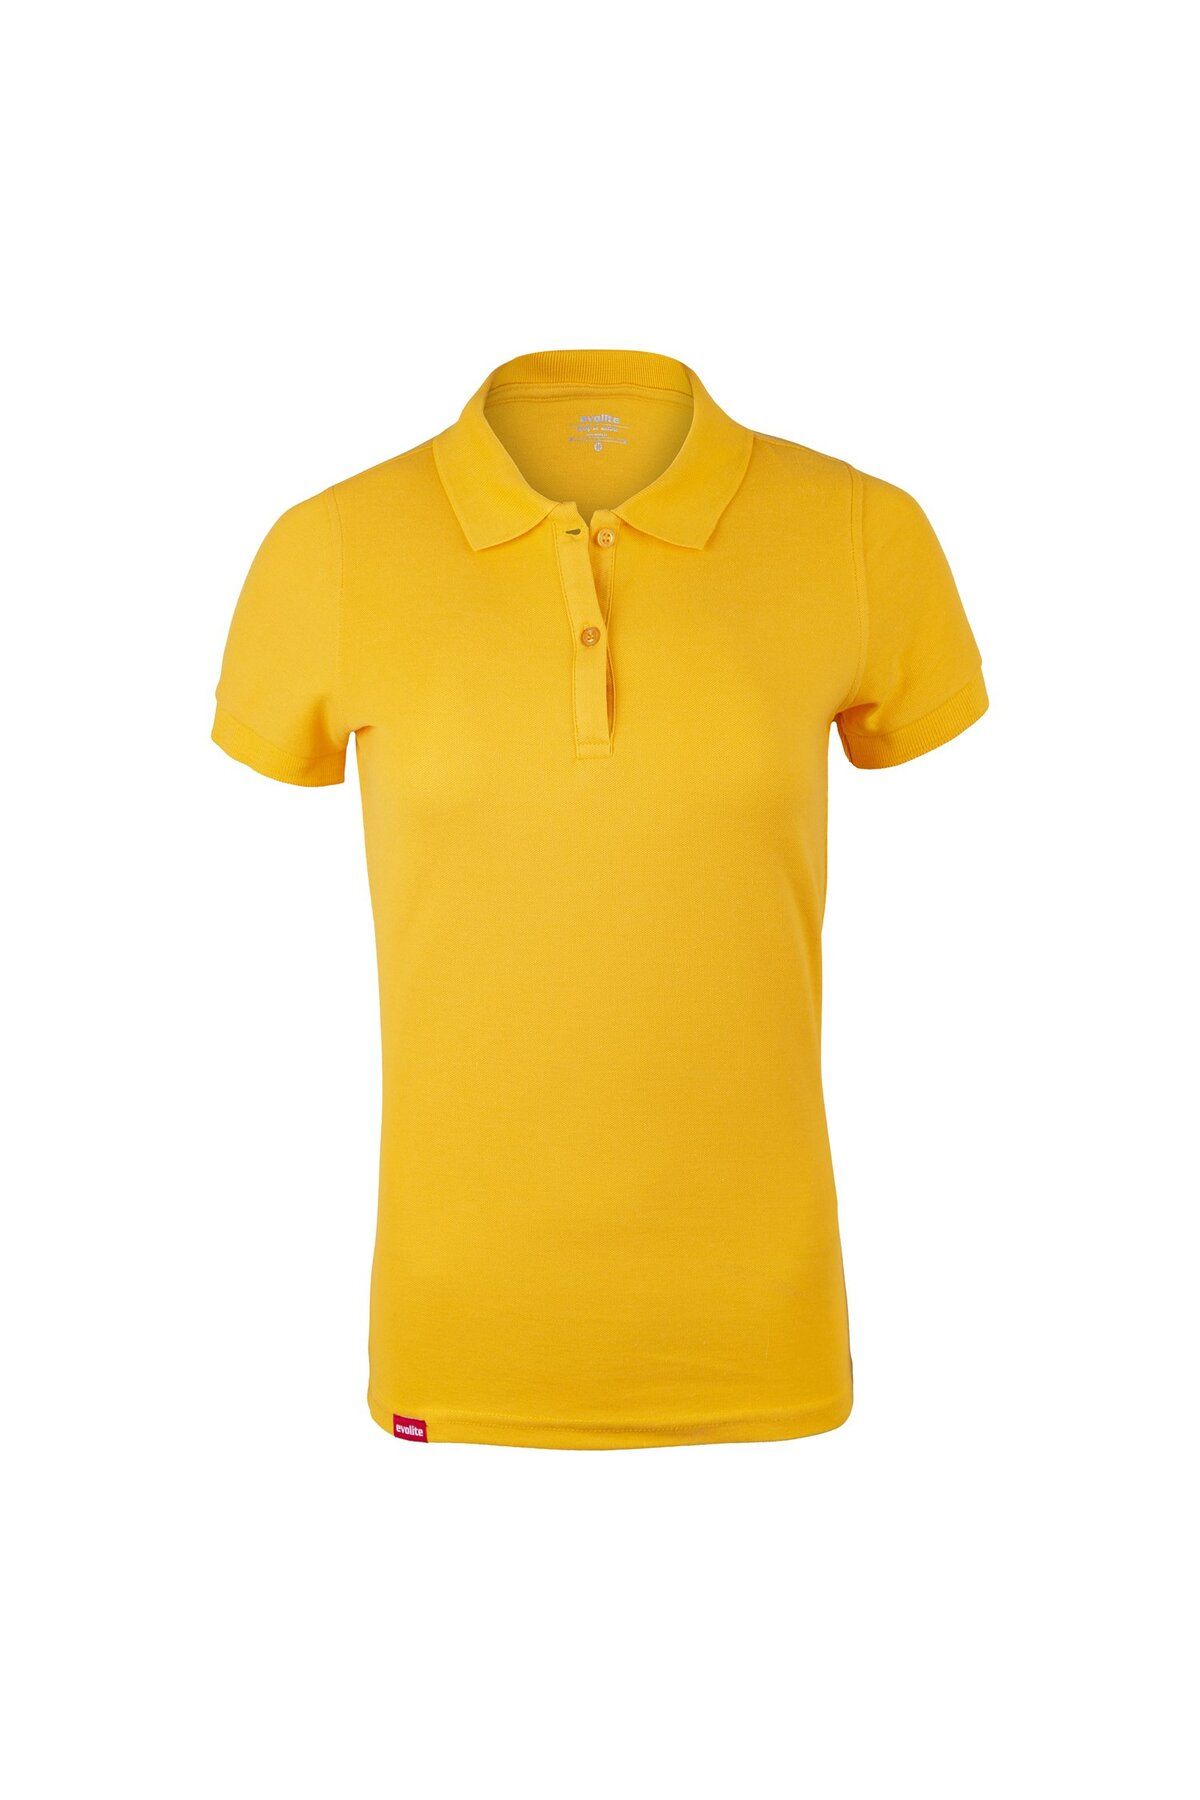 Evolite Deepraw Polo T-shirt - Sarı